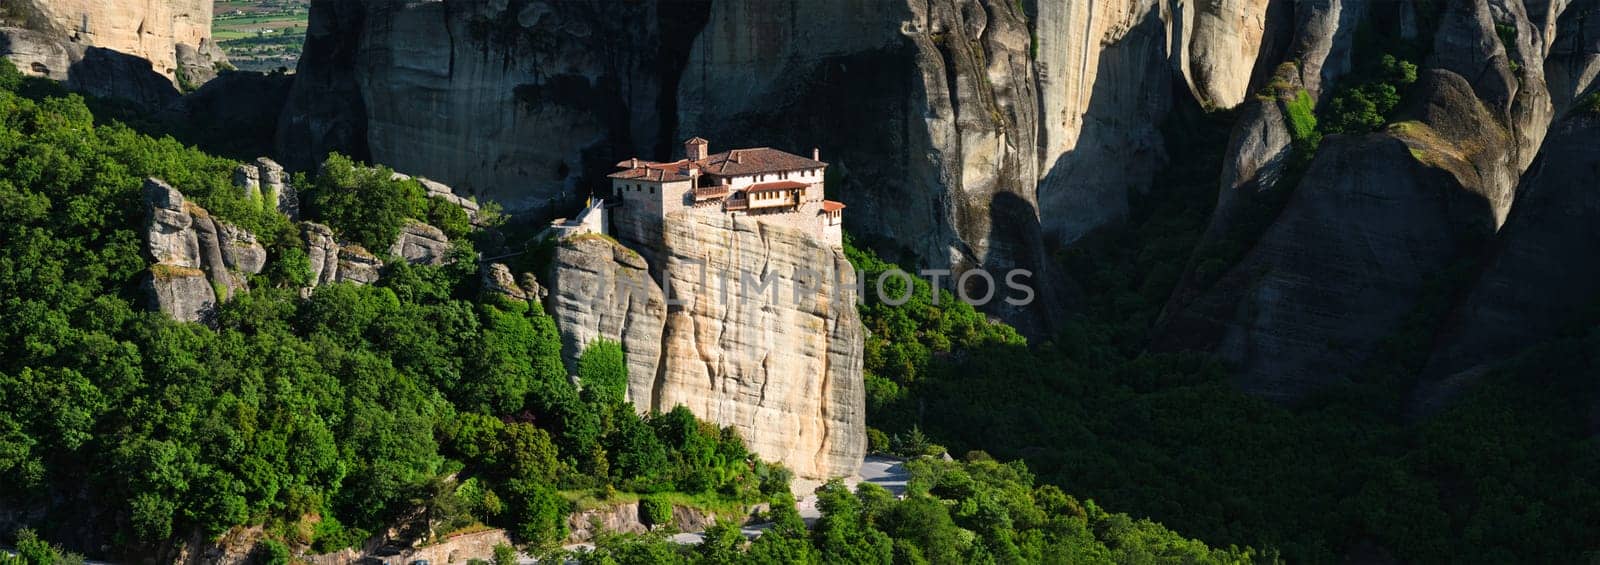 Monastery of Rousanou in Meteora in Greece by dimol